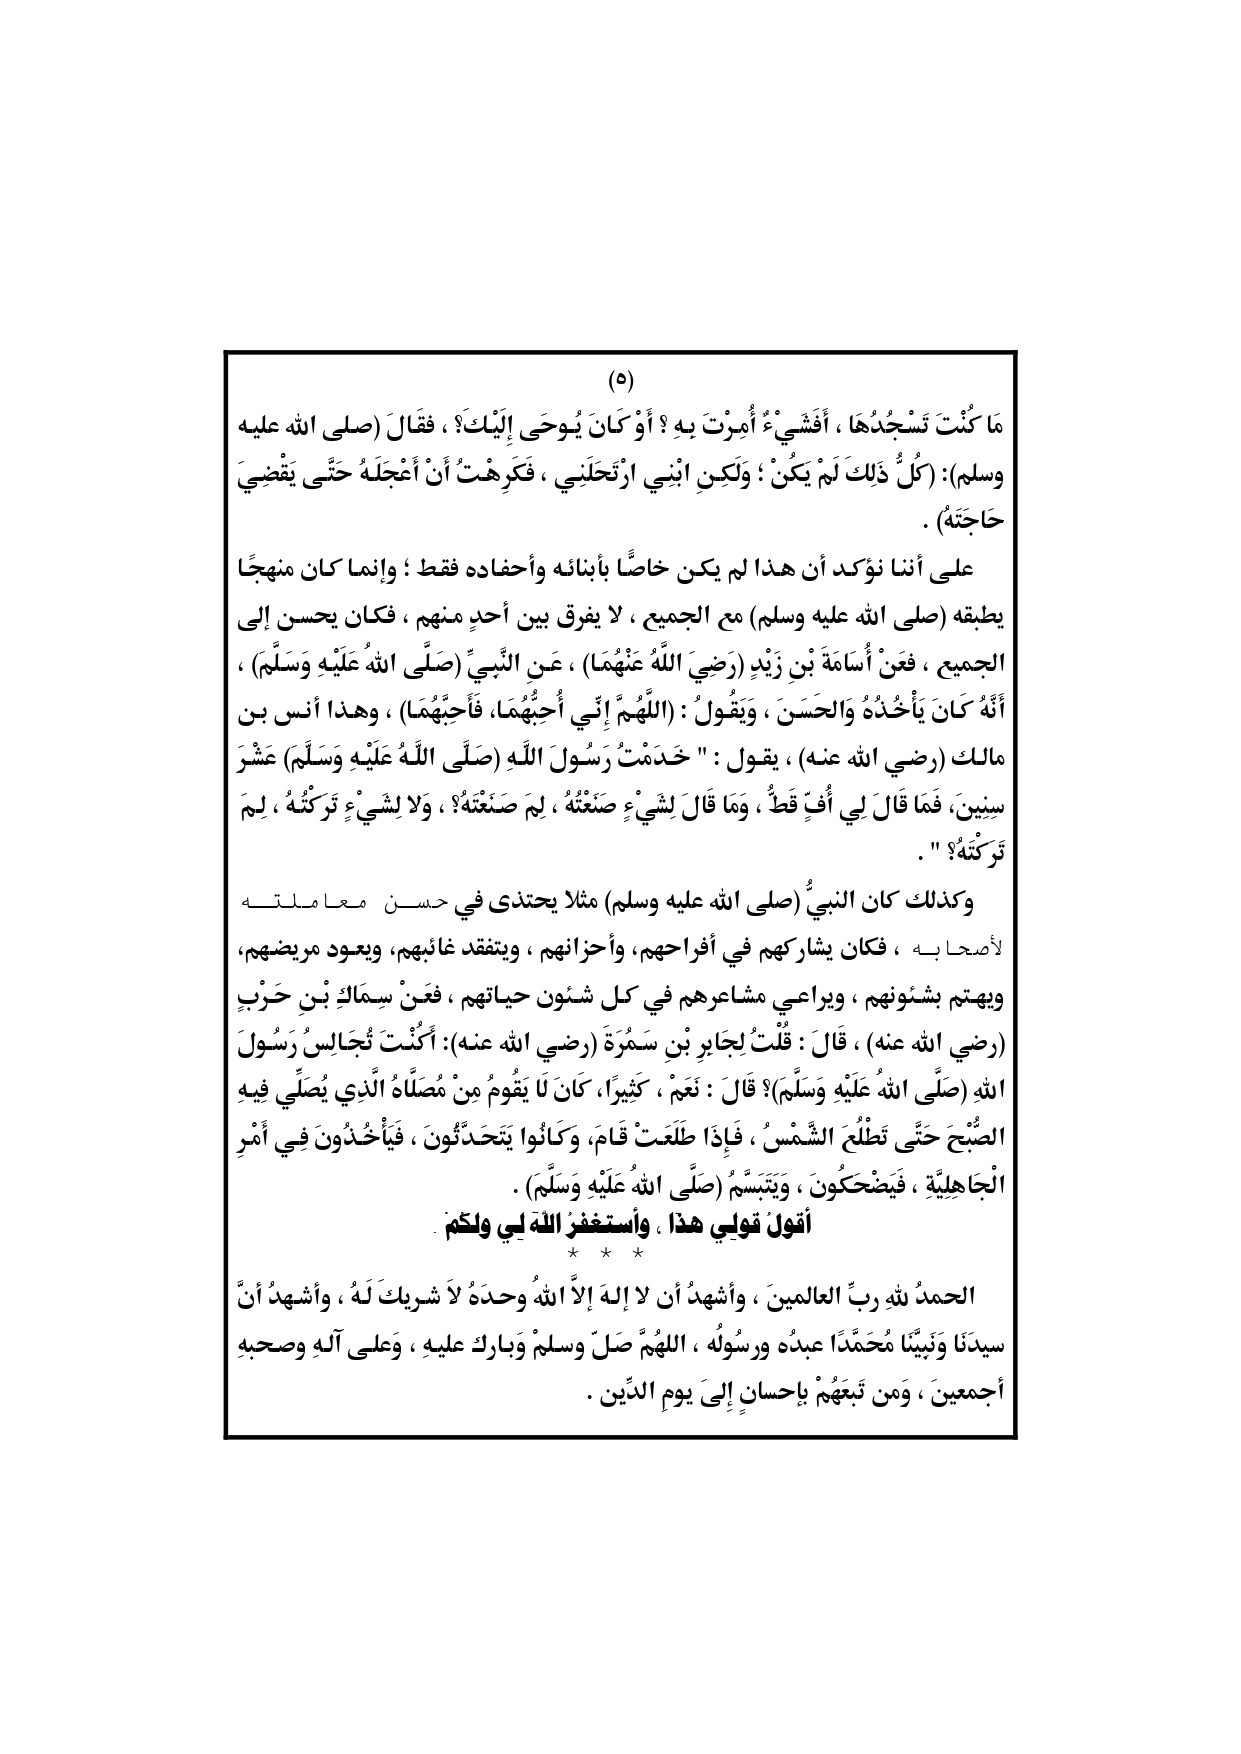 الخطبة الثانية : حياة النبي أنموذج تطبيقي لصحيح الإسلام خطبة وزارة الأوقاف المصرية 1 نوفمبر pdf